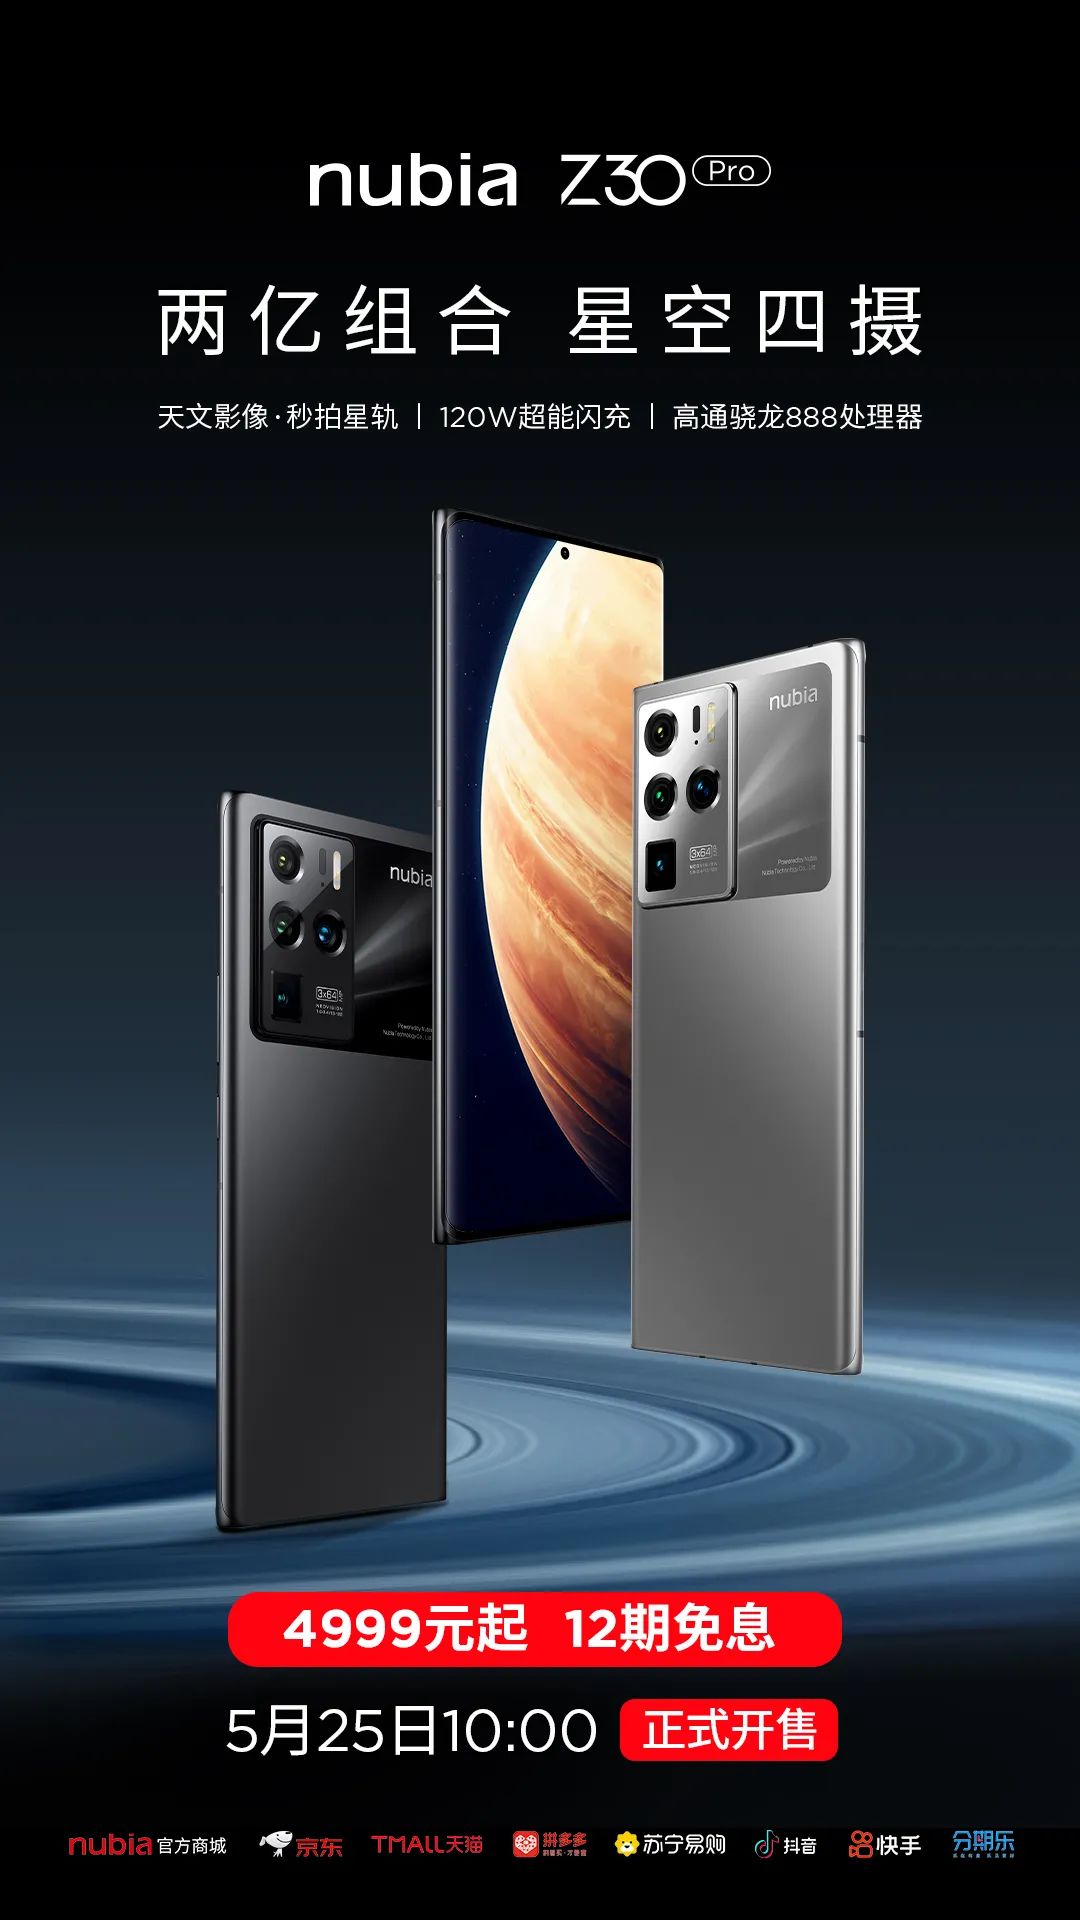 努比亚手机努比亚z30pro旗舰新品5月25日1000正式首销